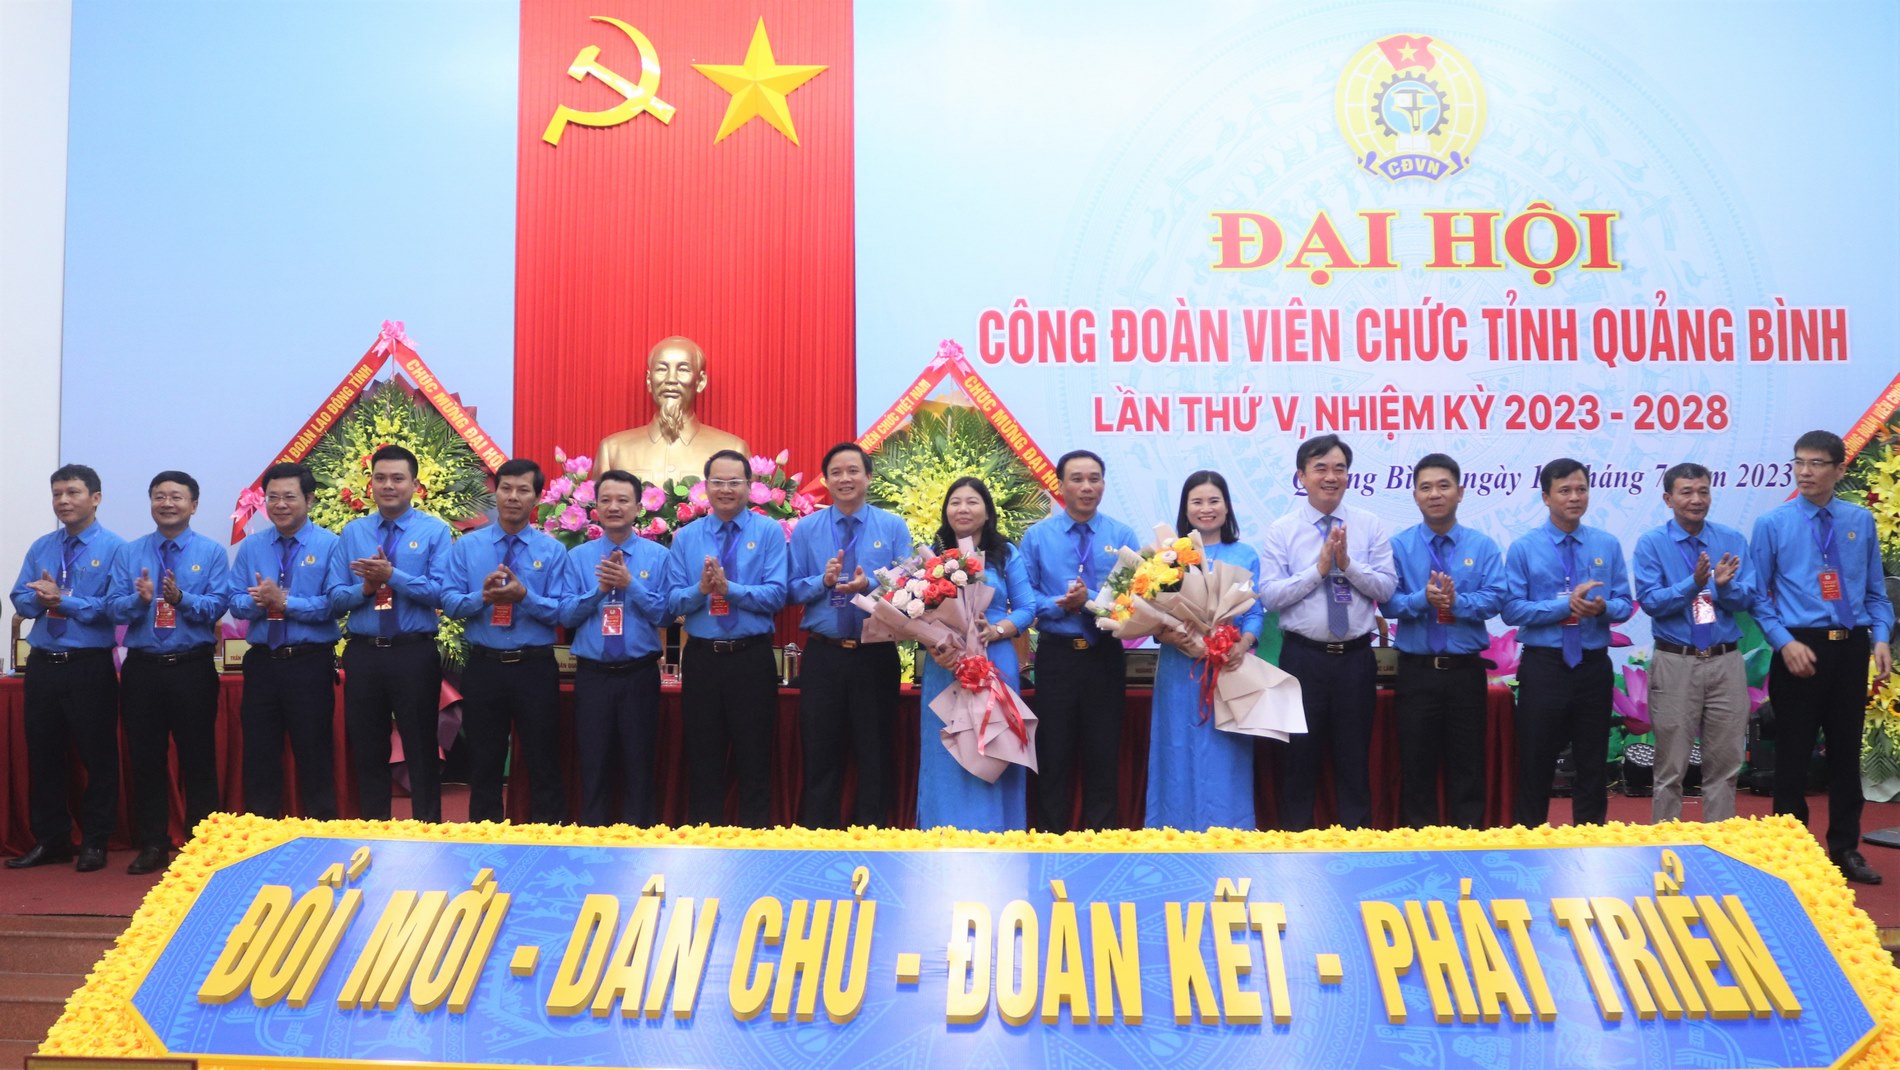 Đại hội Công đoàn Viên chức tỉnh Quảng Bình lần thứ V, nhiệm kỳ 2023 - 2028